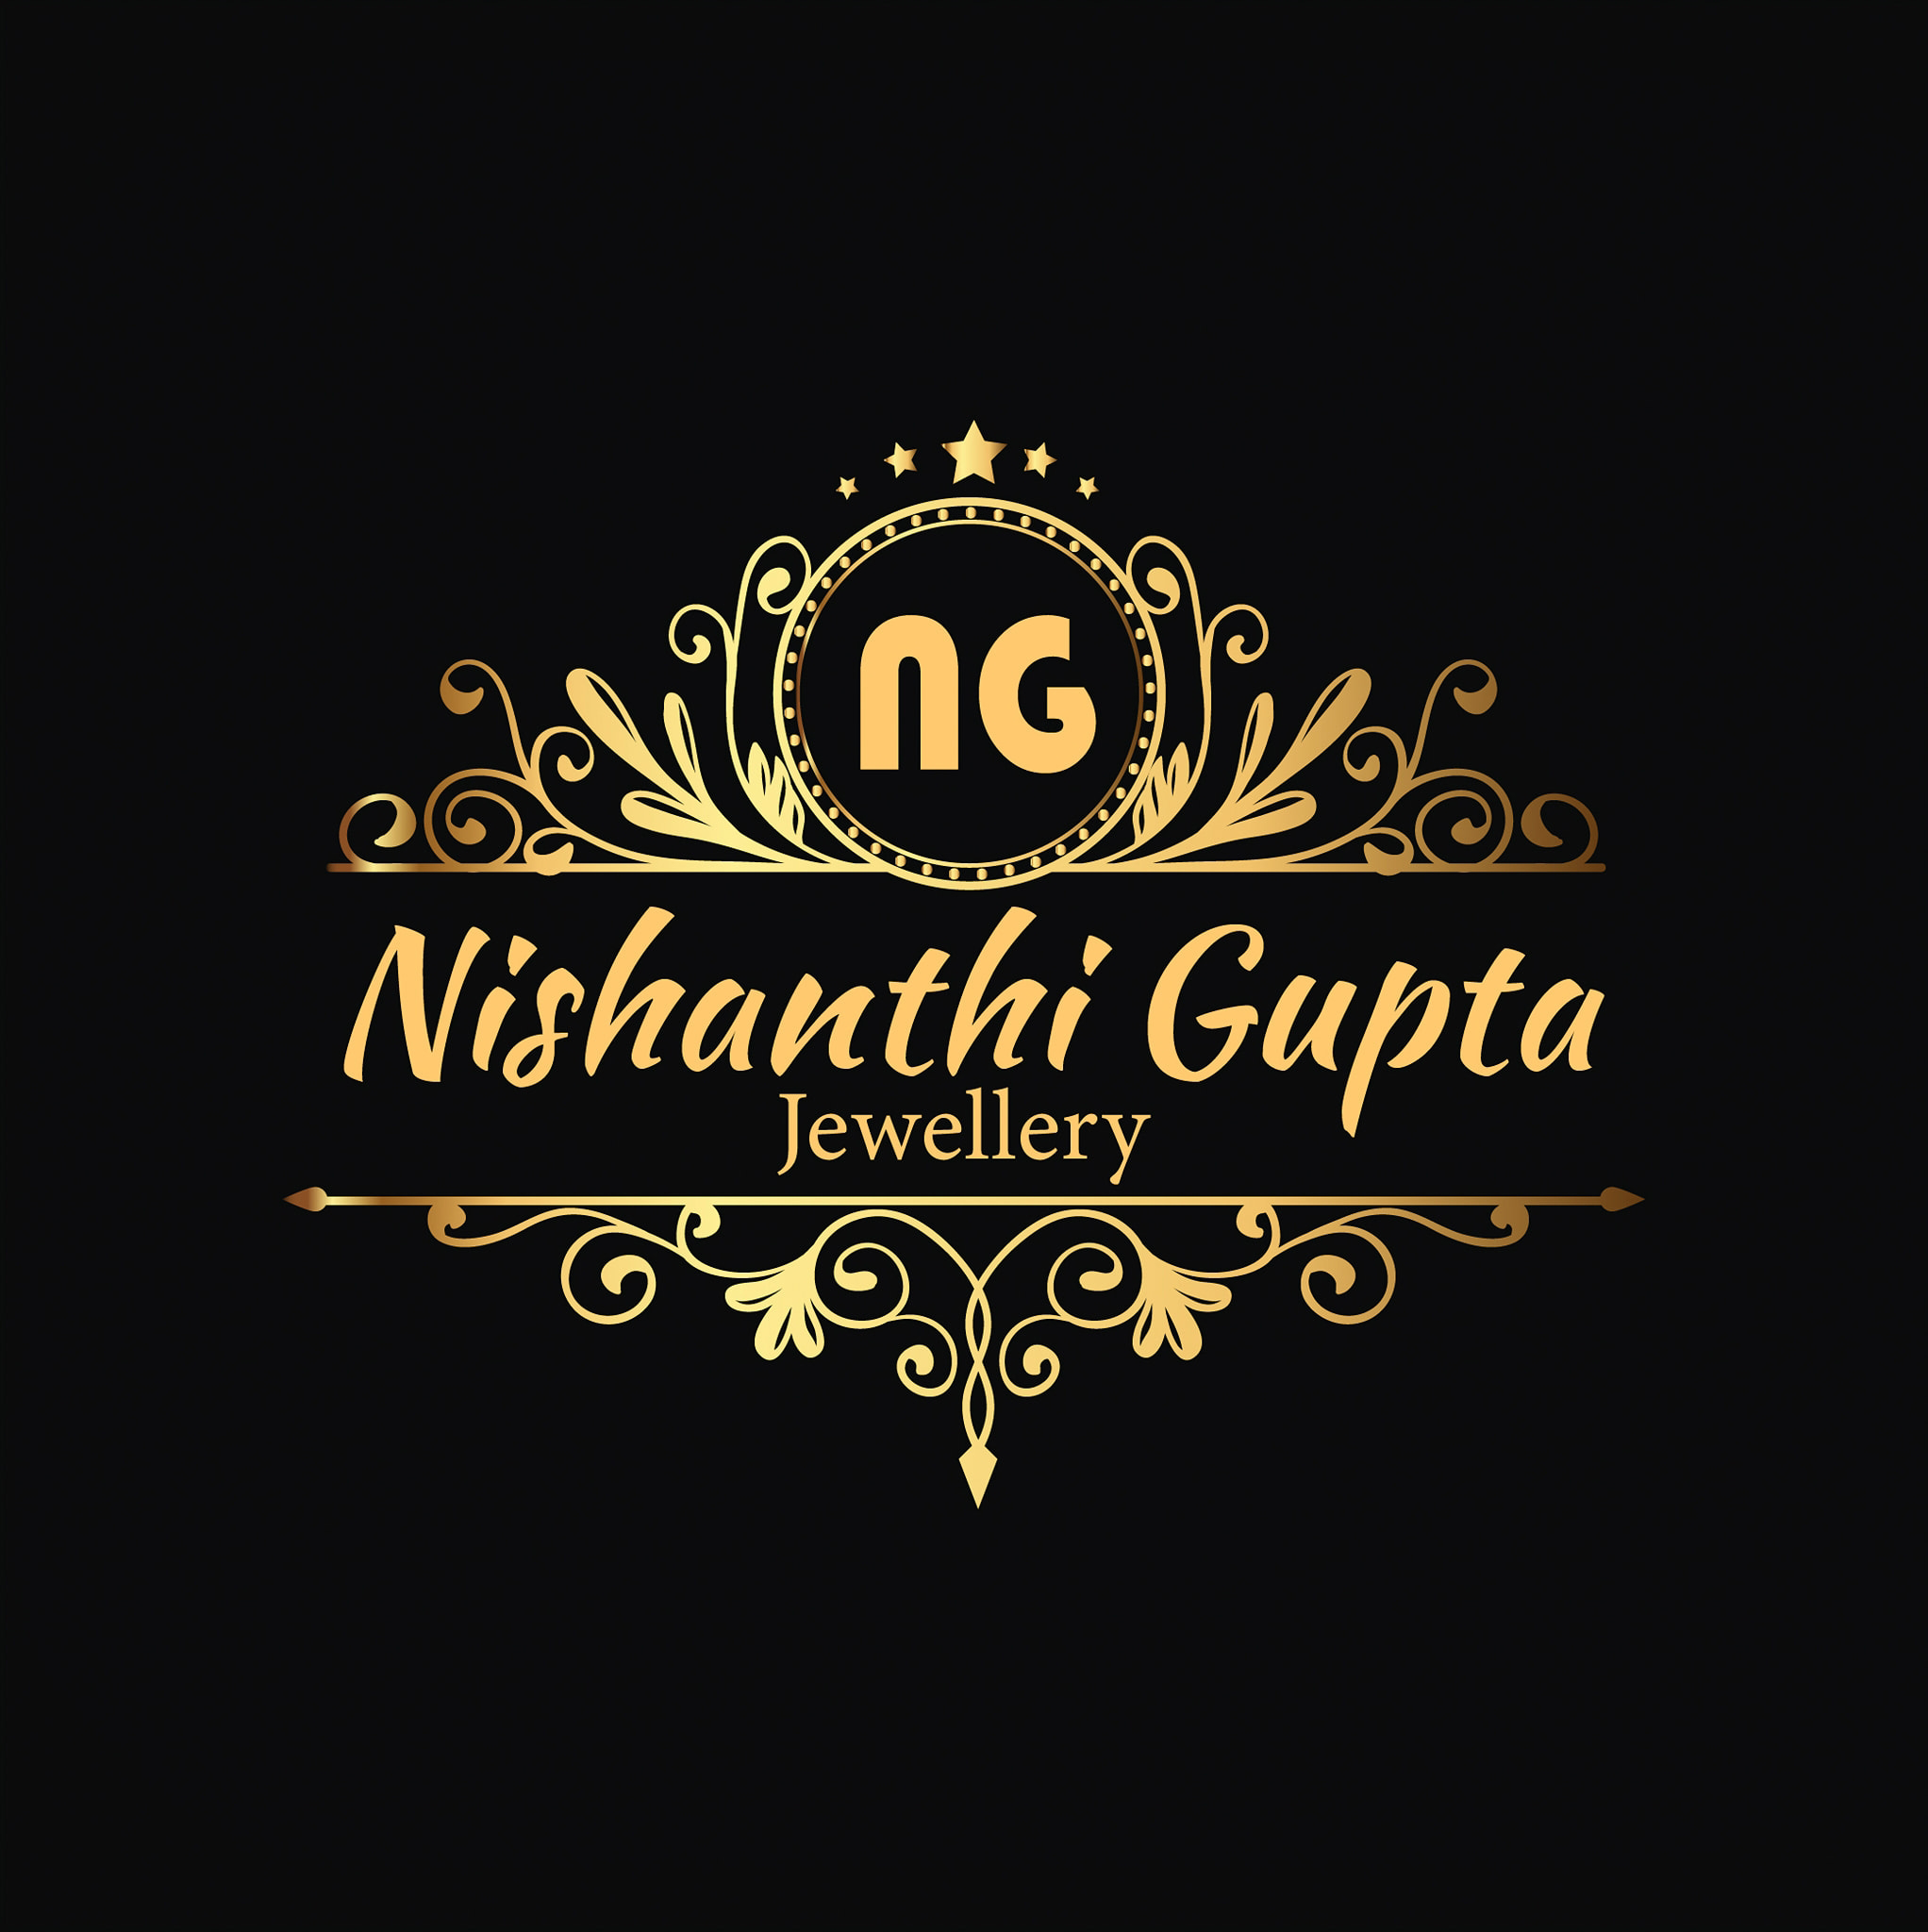 Nishanthi Gupta Jewellery